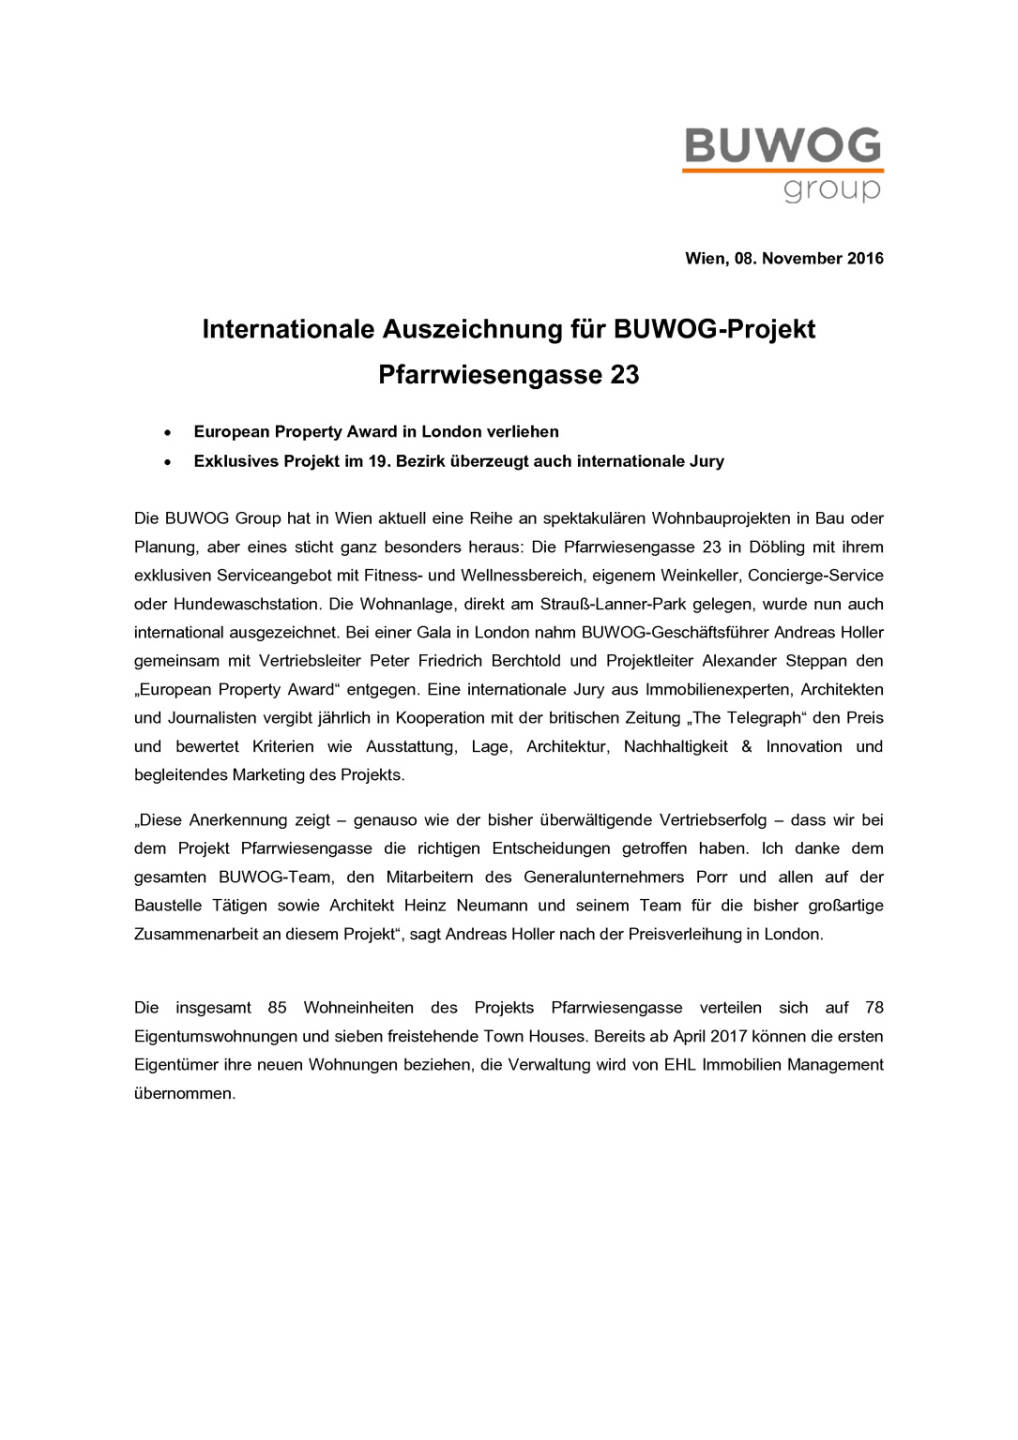 Internat. Auszeichnung für Buwog-Projekt, Seite 1/2, komplettes Dokument unter http://boerse-social.com/static/uploads/file_1963_internat_auszeichnung_für_buwog-projekt.pdf